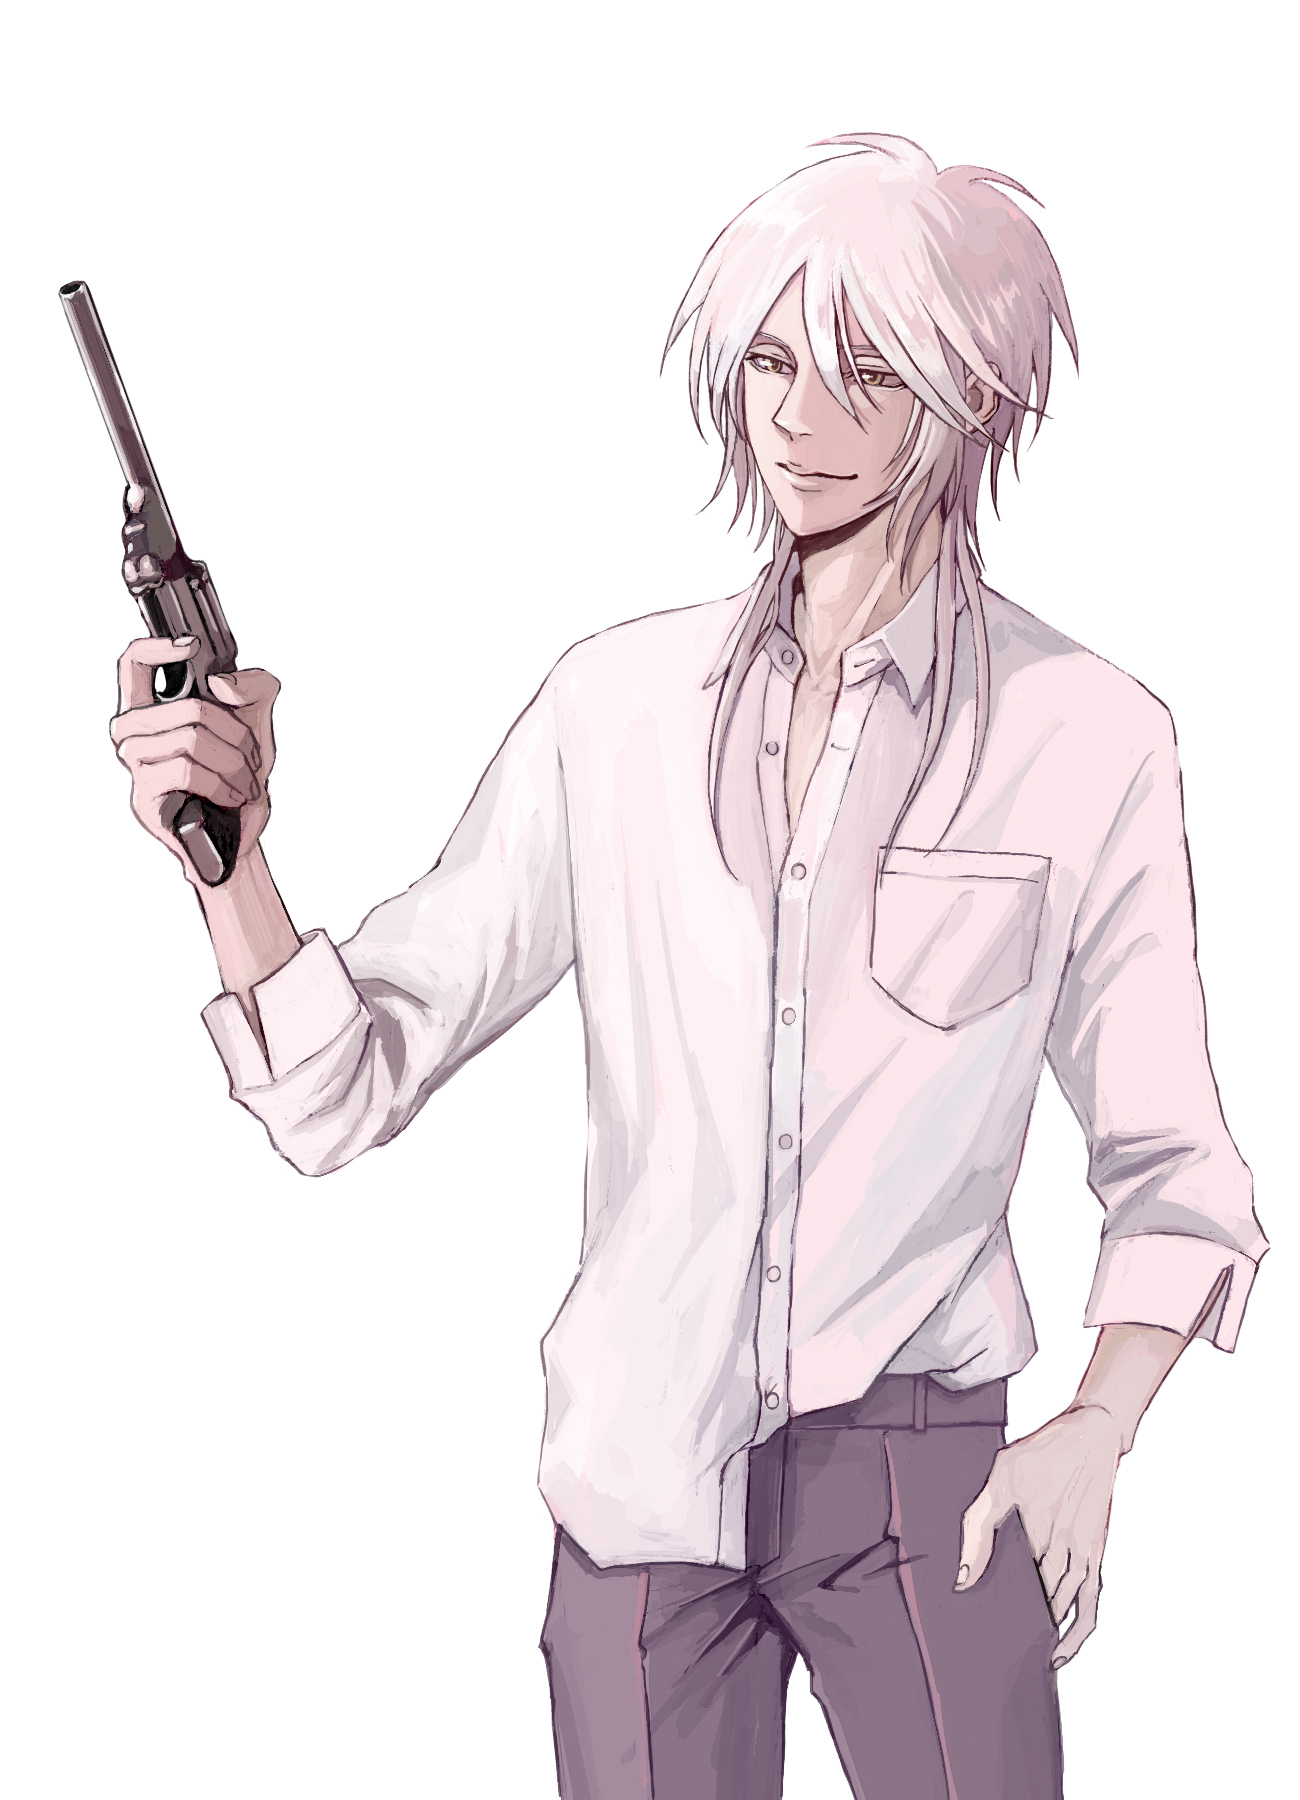 灰色長髪で白シャツに薄紫色のズボンを身に付けた青年が拳銃を右手に持ち、微笑んでいるイラスト